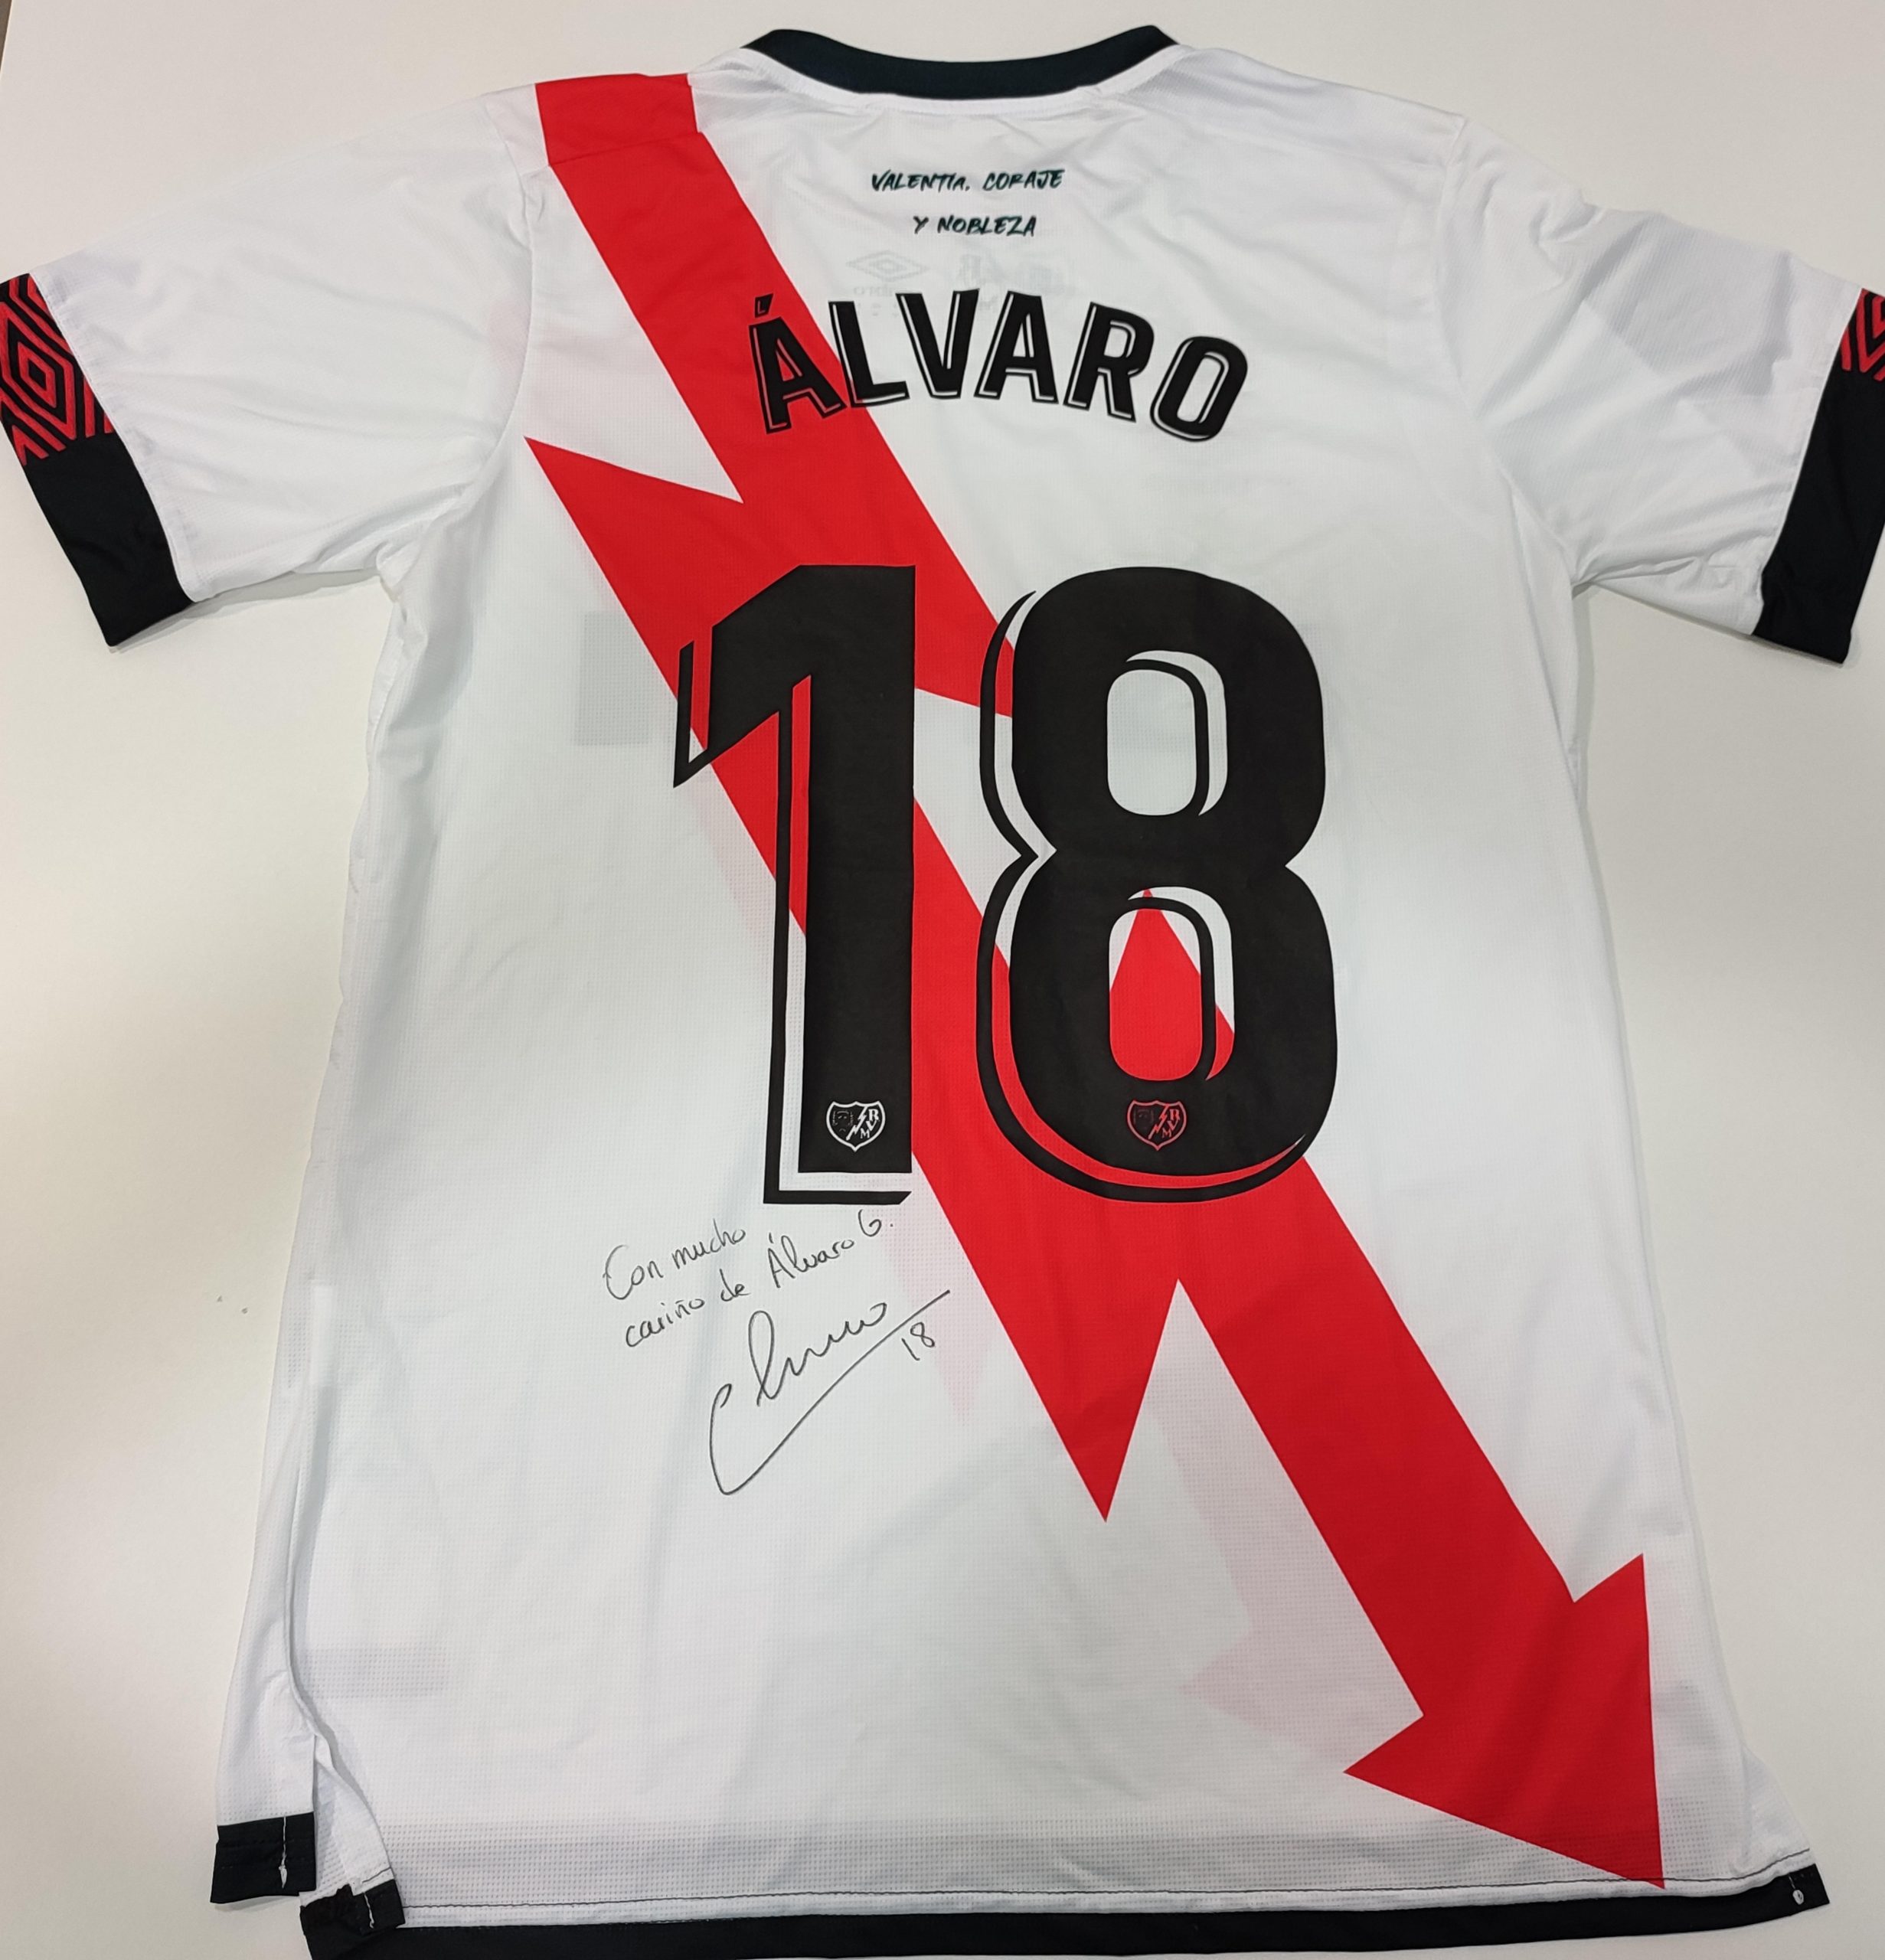 Álvaro García subasta una camiseta firmada con fines benéficos